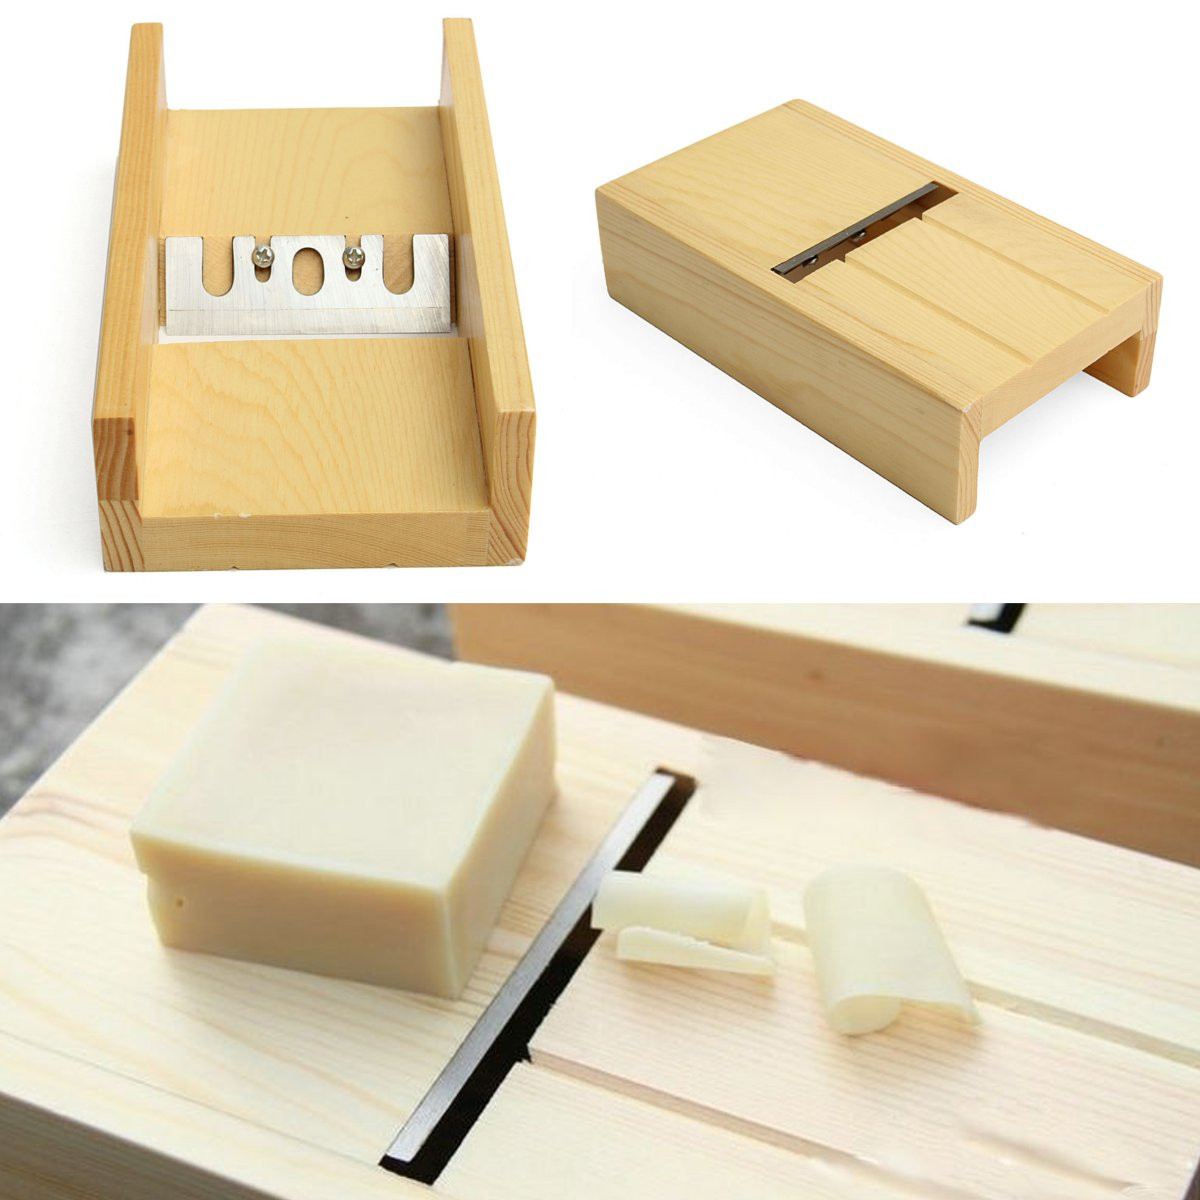 Wooden-Beveler-Planer-Sharp-Blade-Handmade-Soap-Loaf-Mold-Cutter-for-DIY-Craft-Making-Tool-1454770